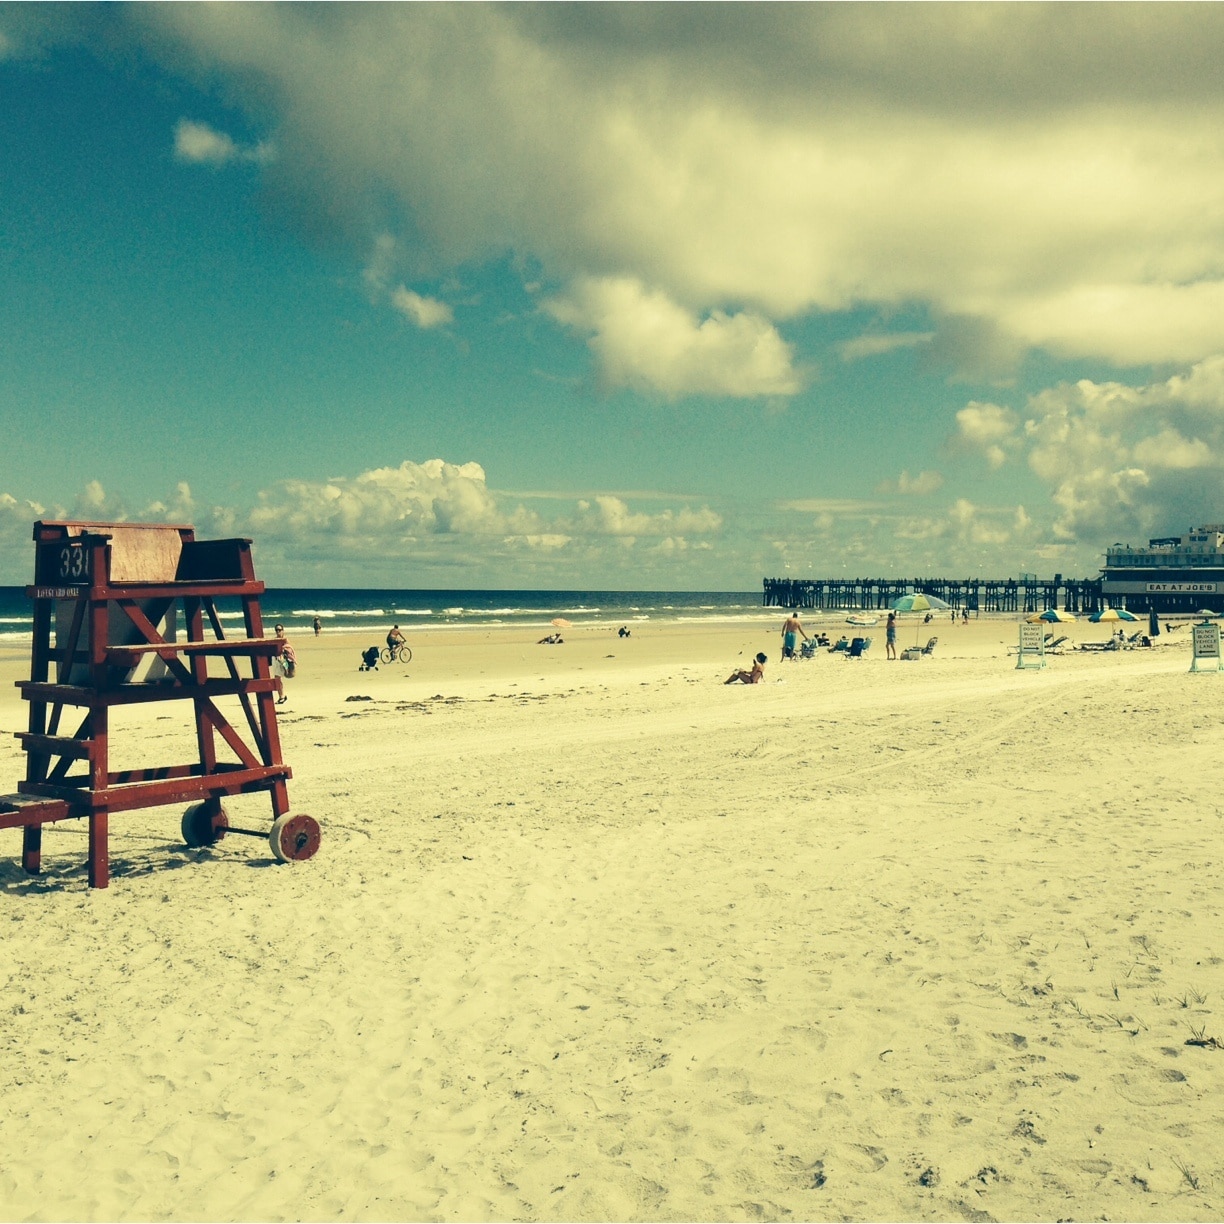 Daytona Beach Boardwalk, Daytona Beach, Florida, United States of America